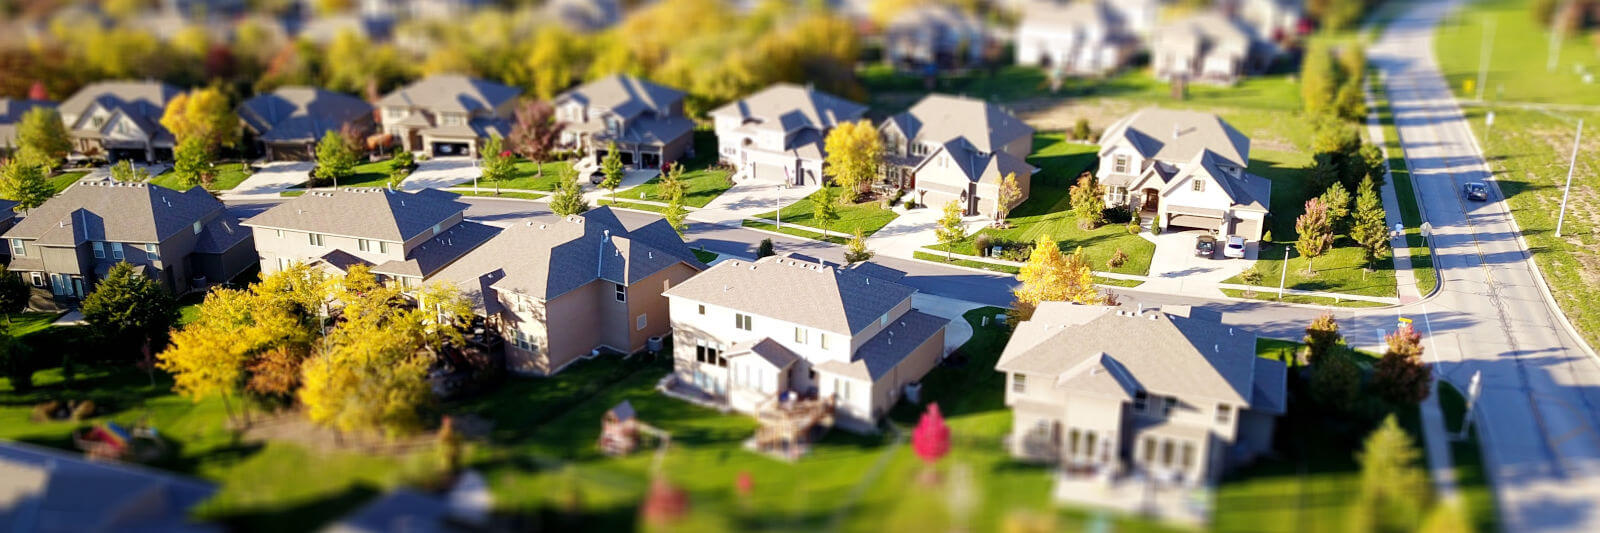 suburban neighborhood